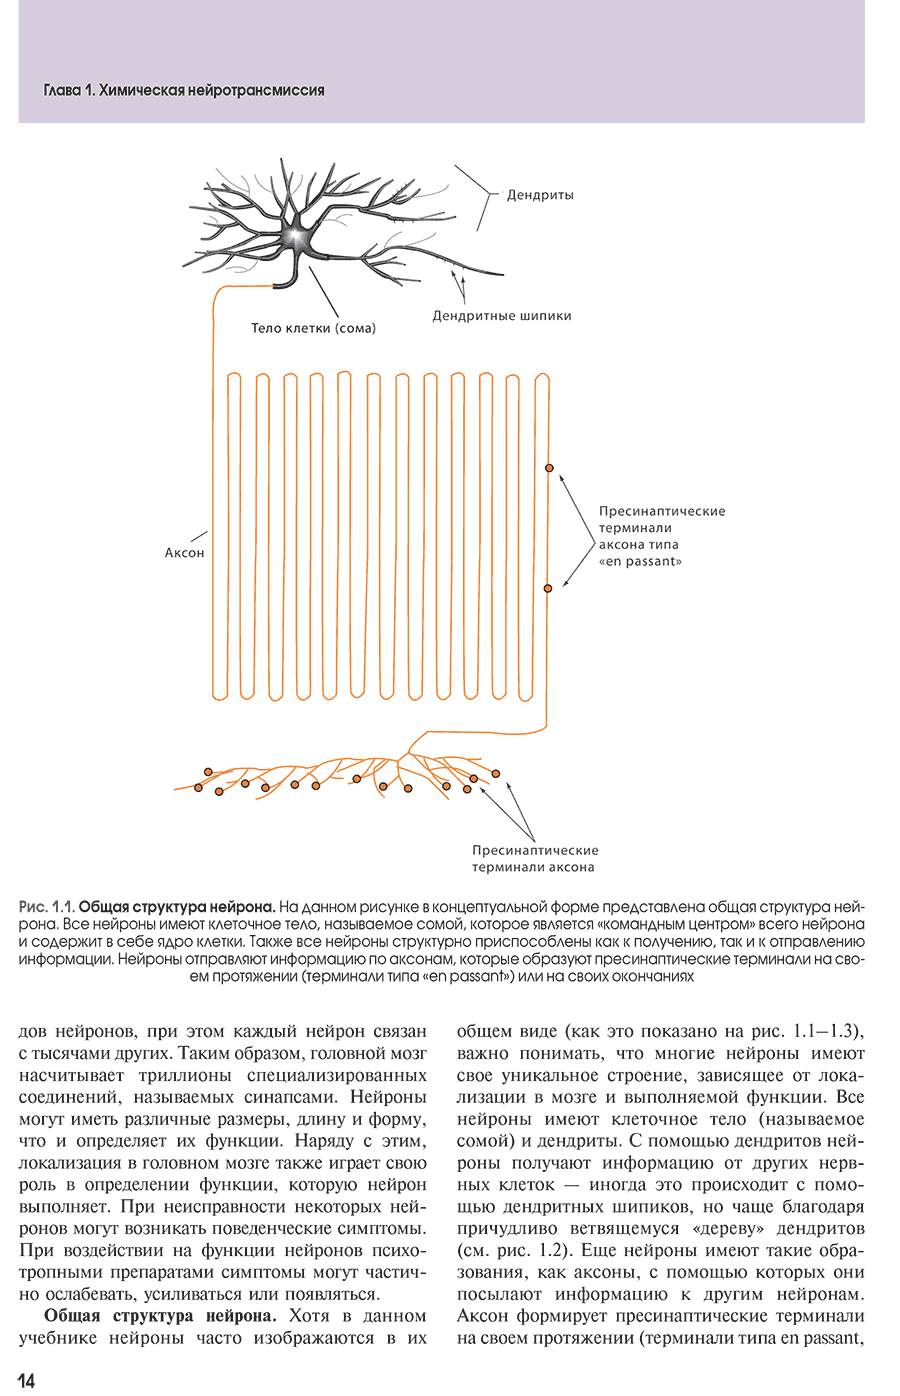 Рис. 1.1. Общая структура нейрона.